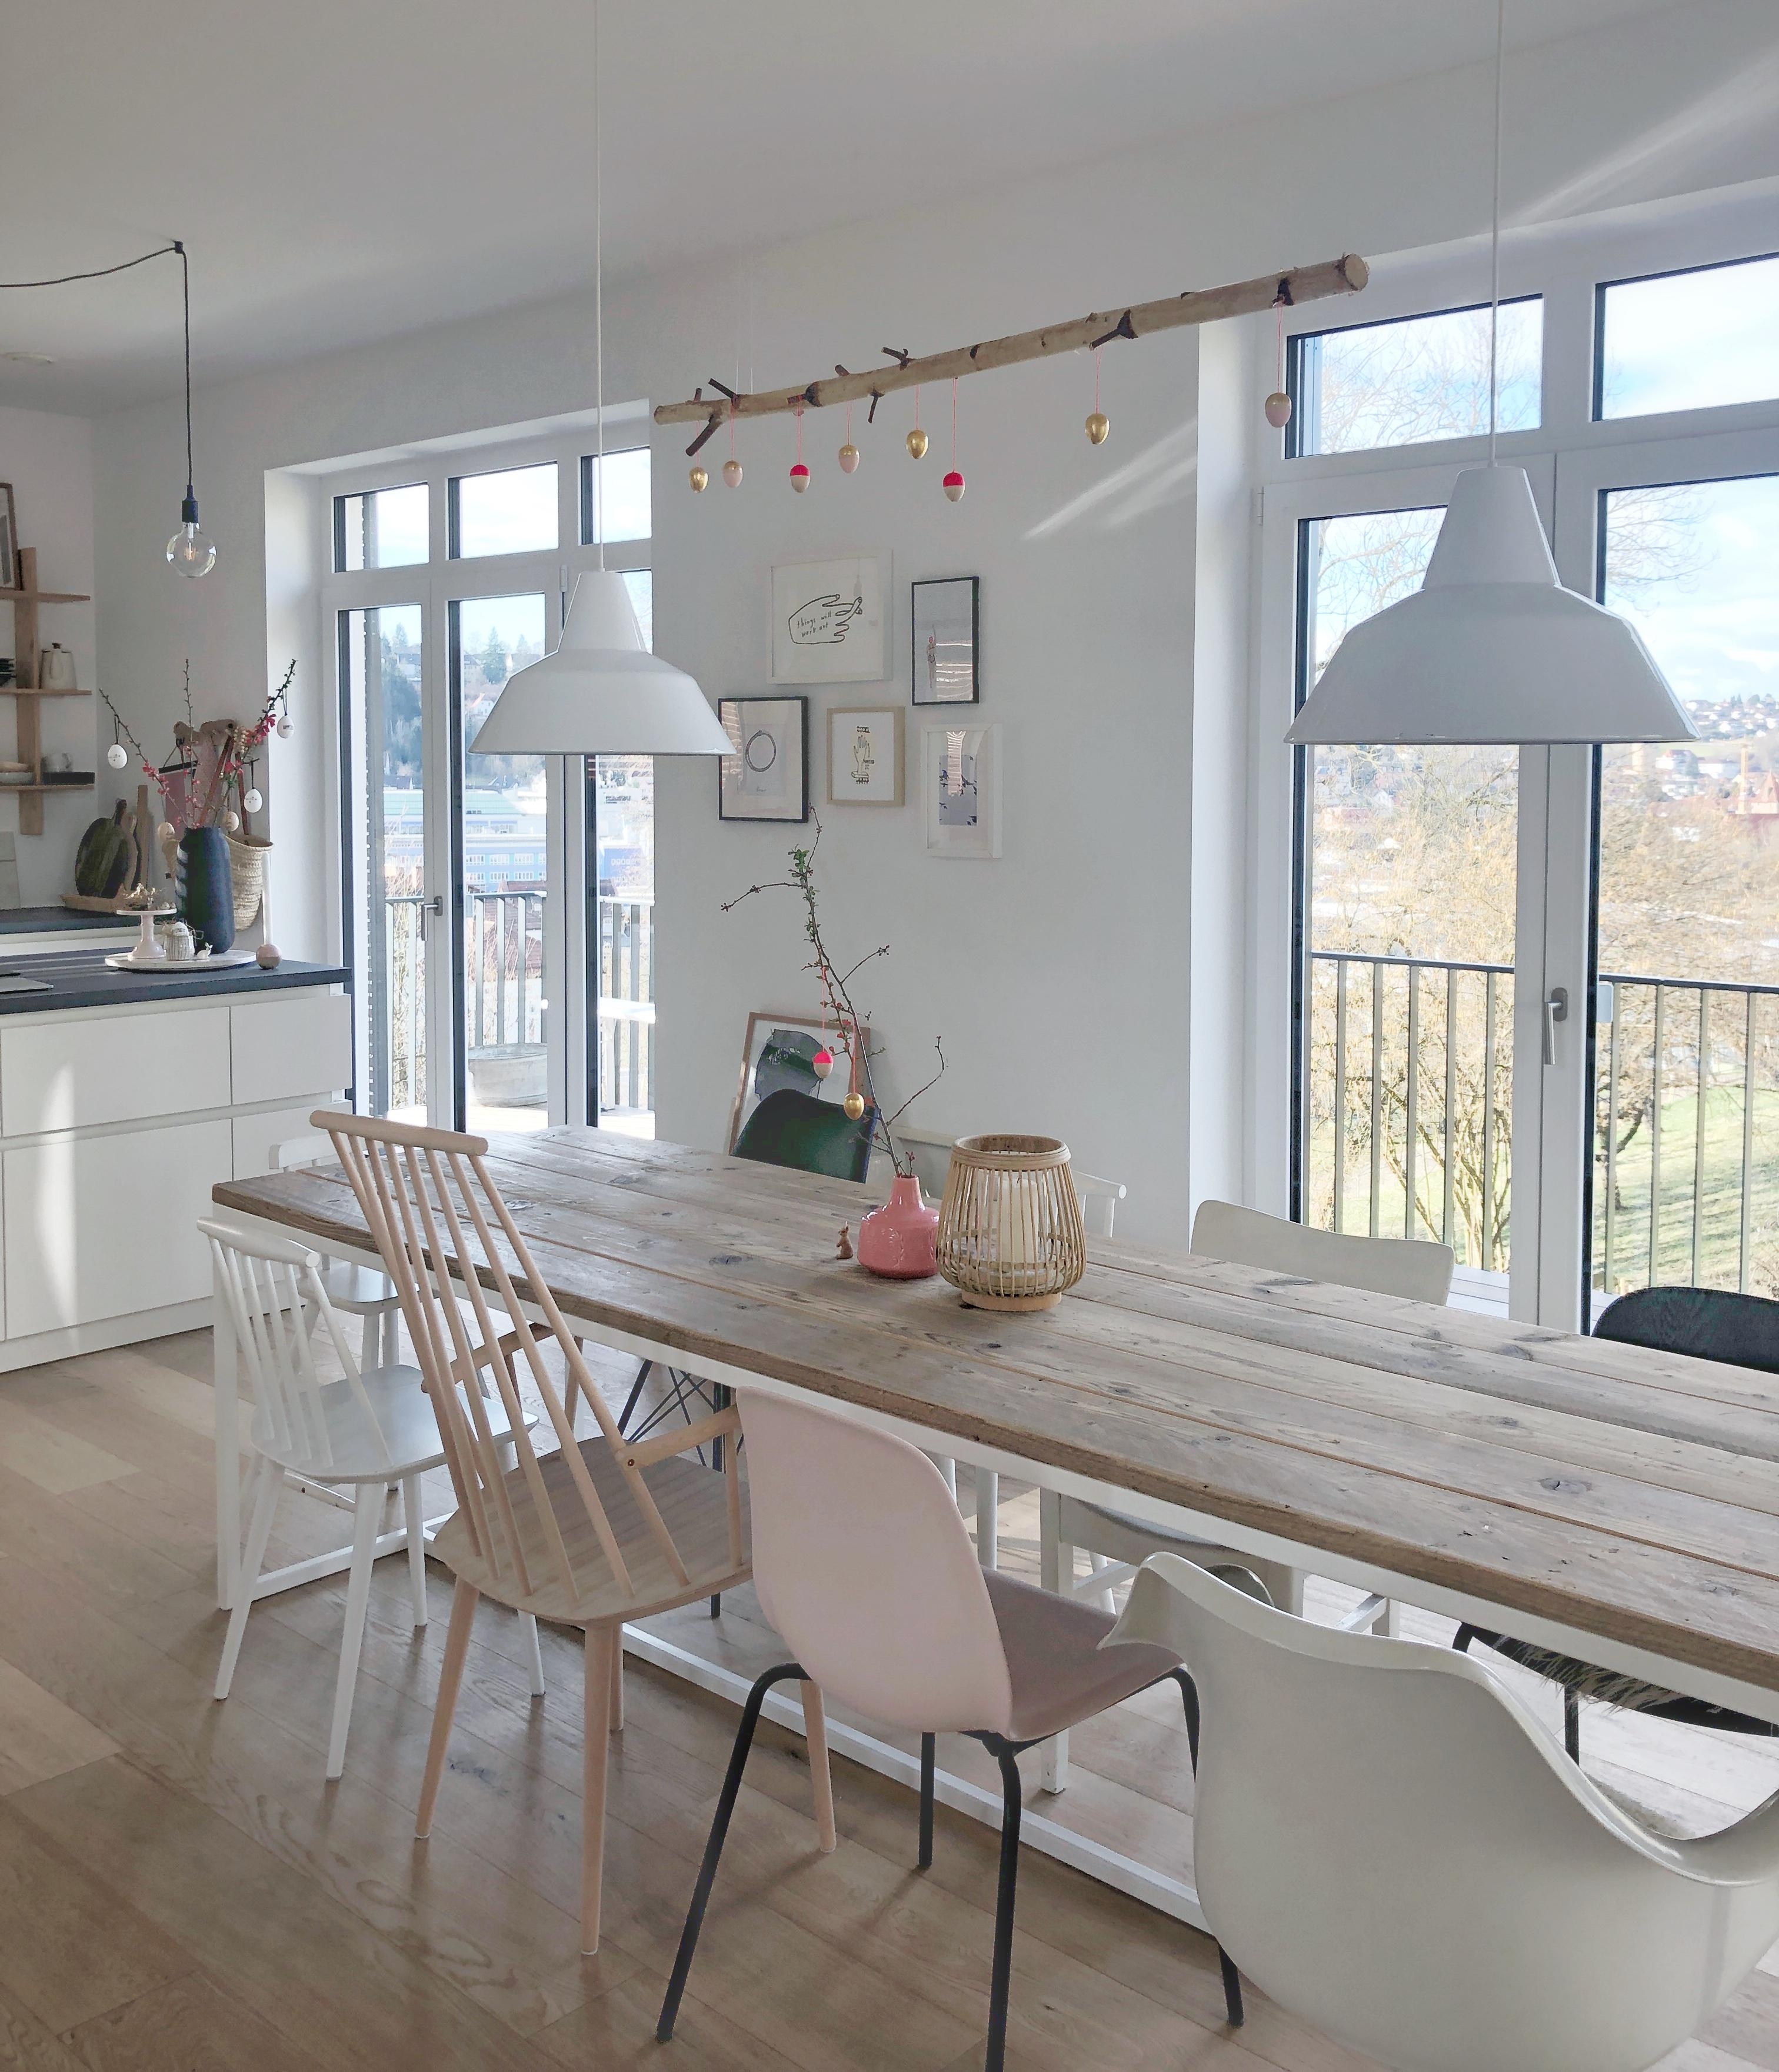 Unser Esstisch! Extra lang für viele Gäste!
#esstisch#tisch#küche#kitchen#nordicstyle#whitehome